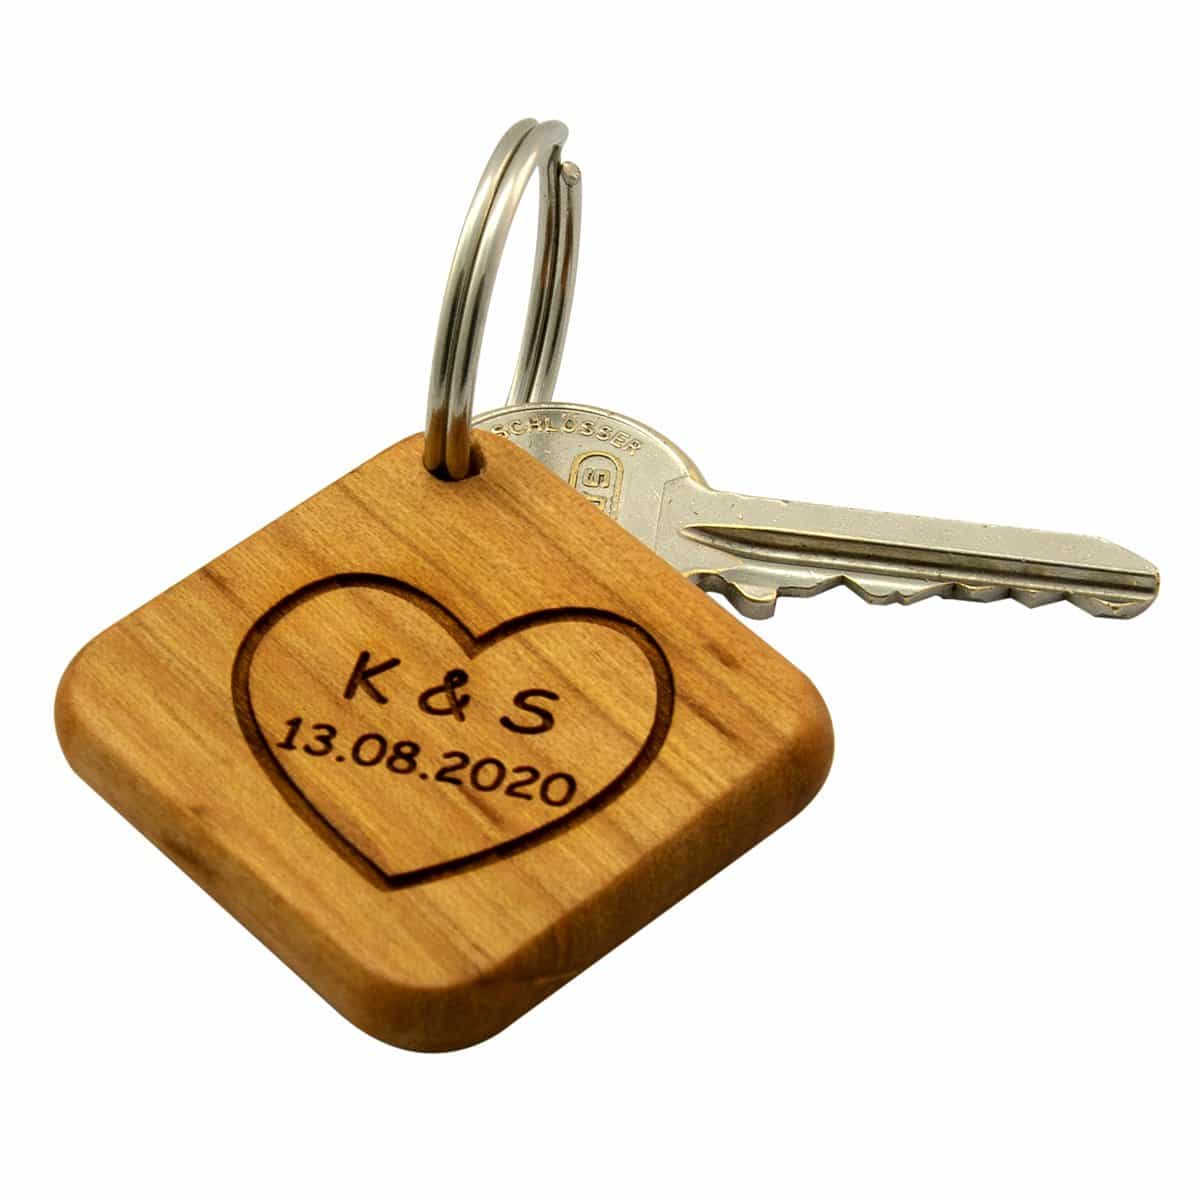 Holz - Schlüsselanhänger mit Initialen und Datum